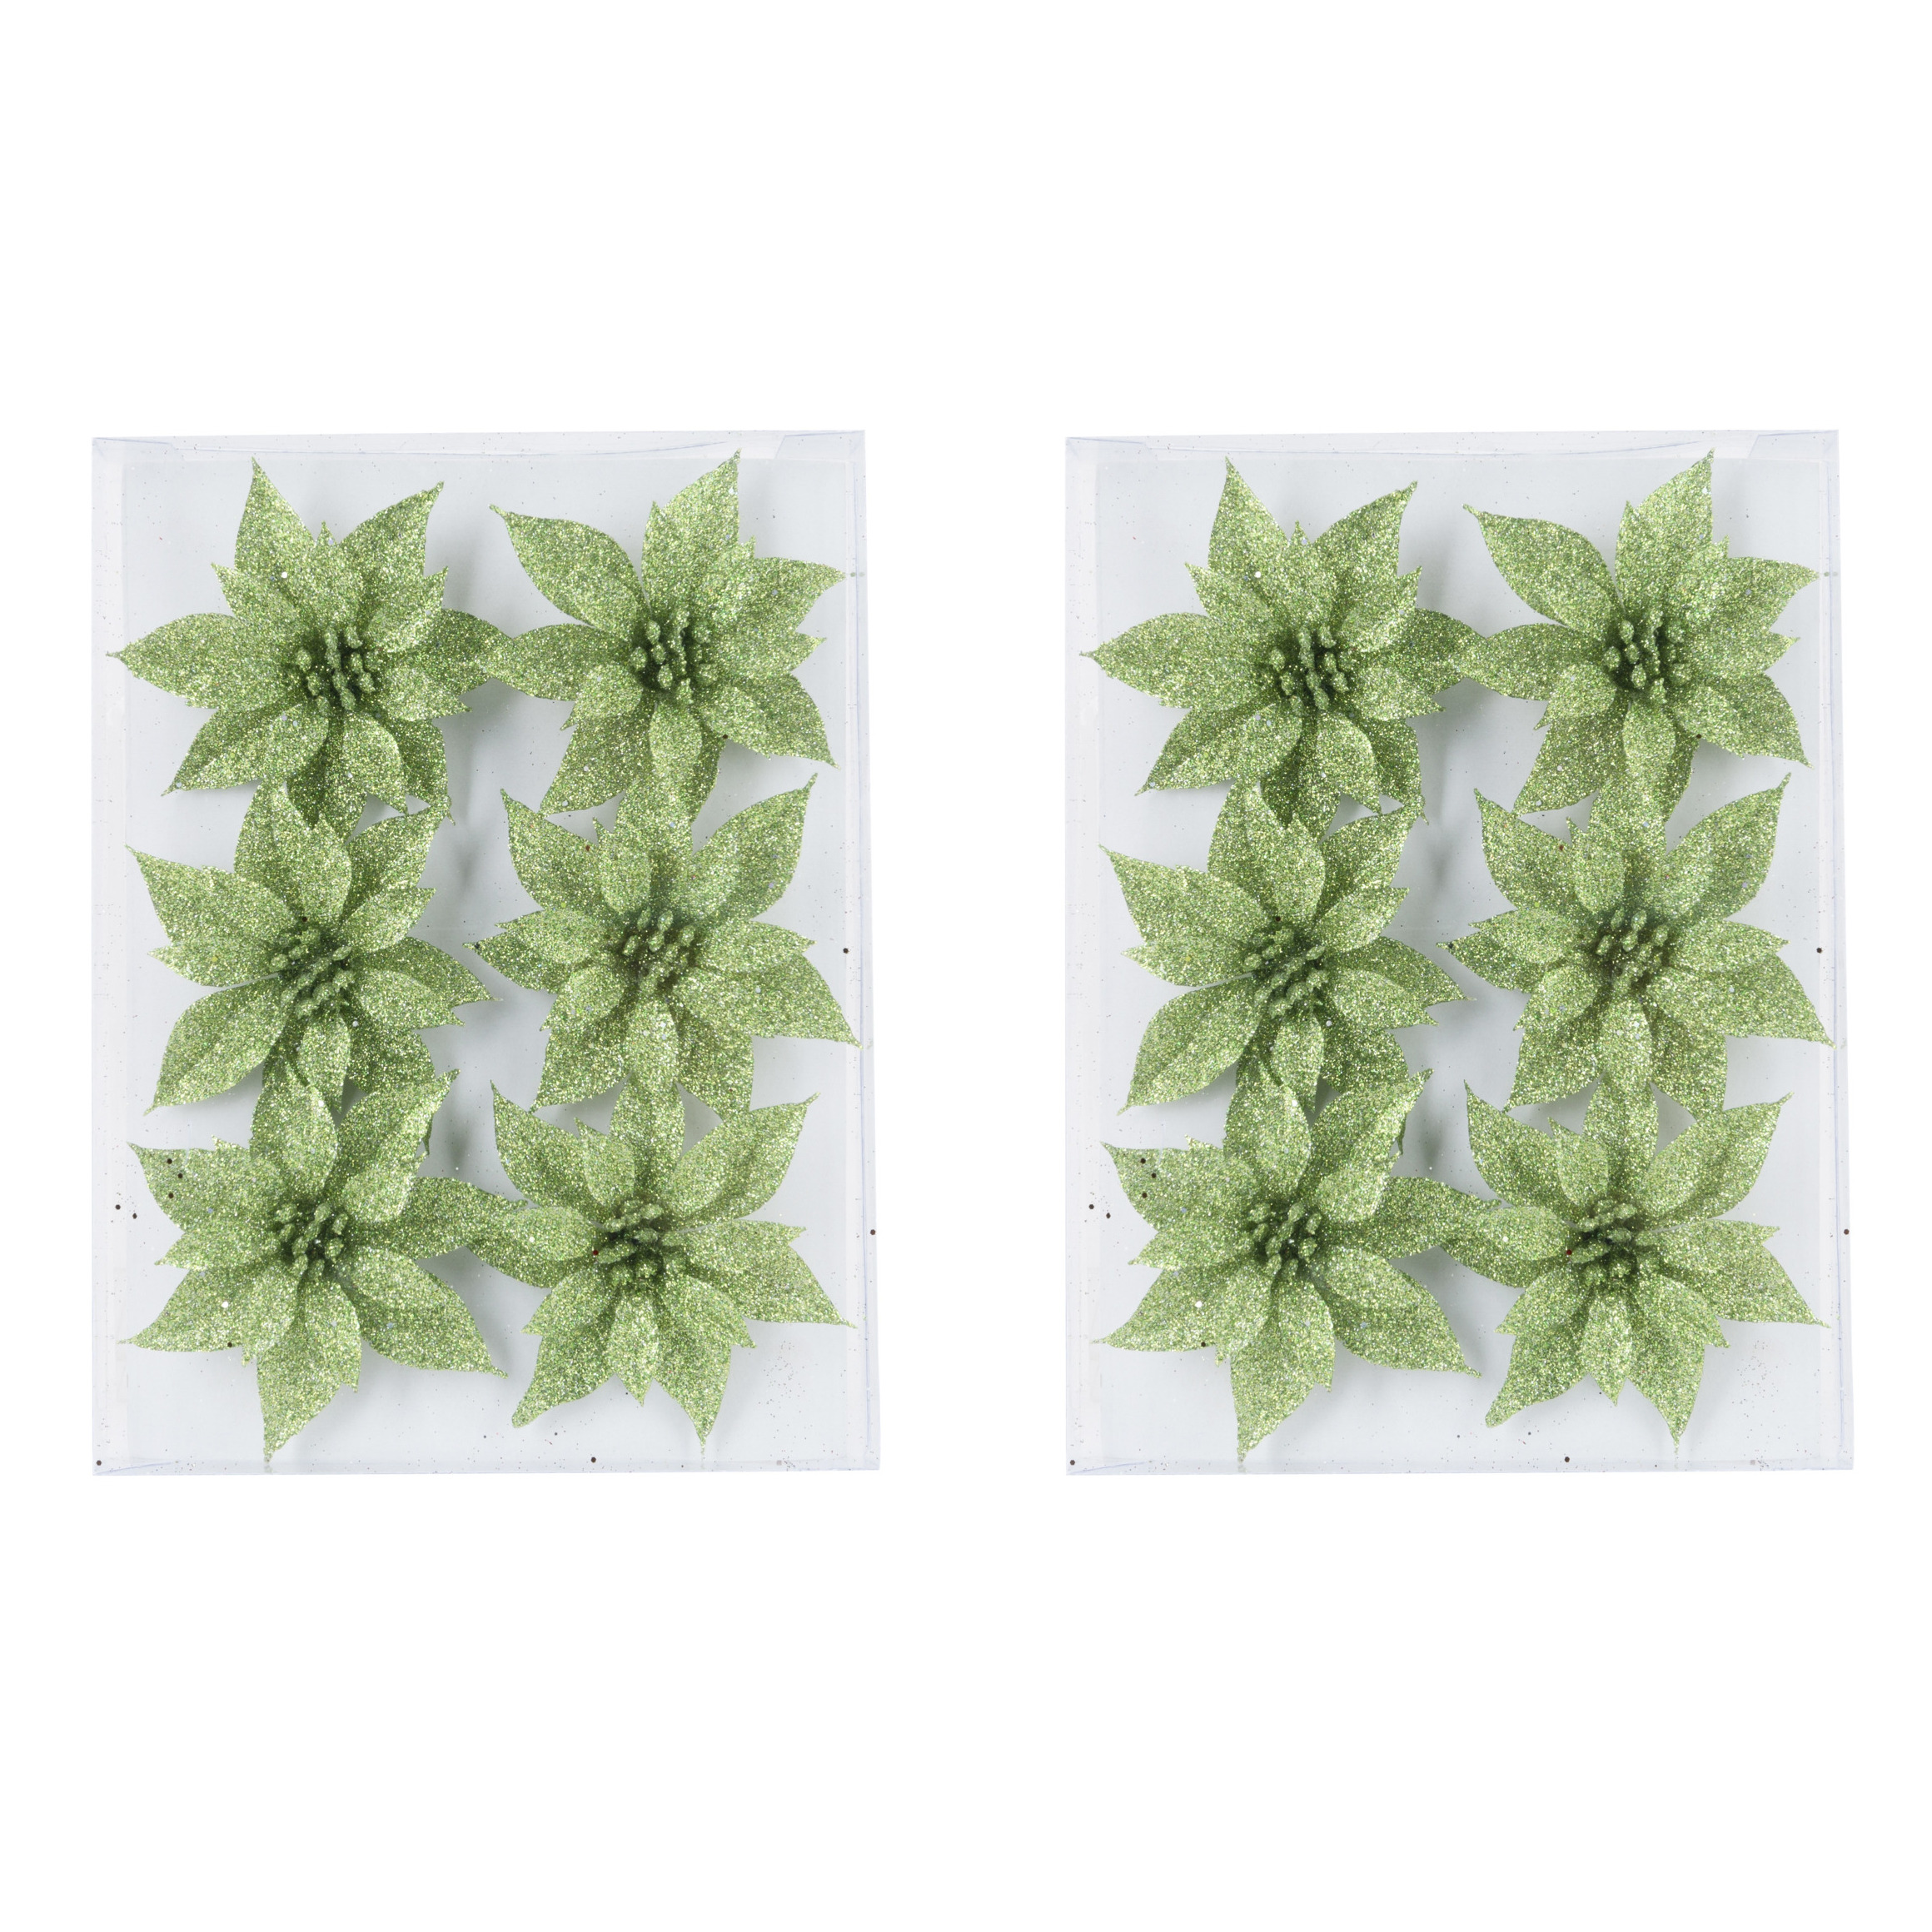 18x stuks decoratie bloemen rozen groen glitter op ijzerdraad 8 cm